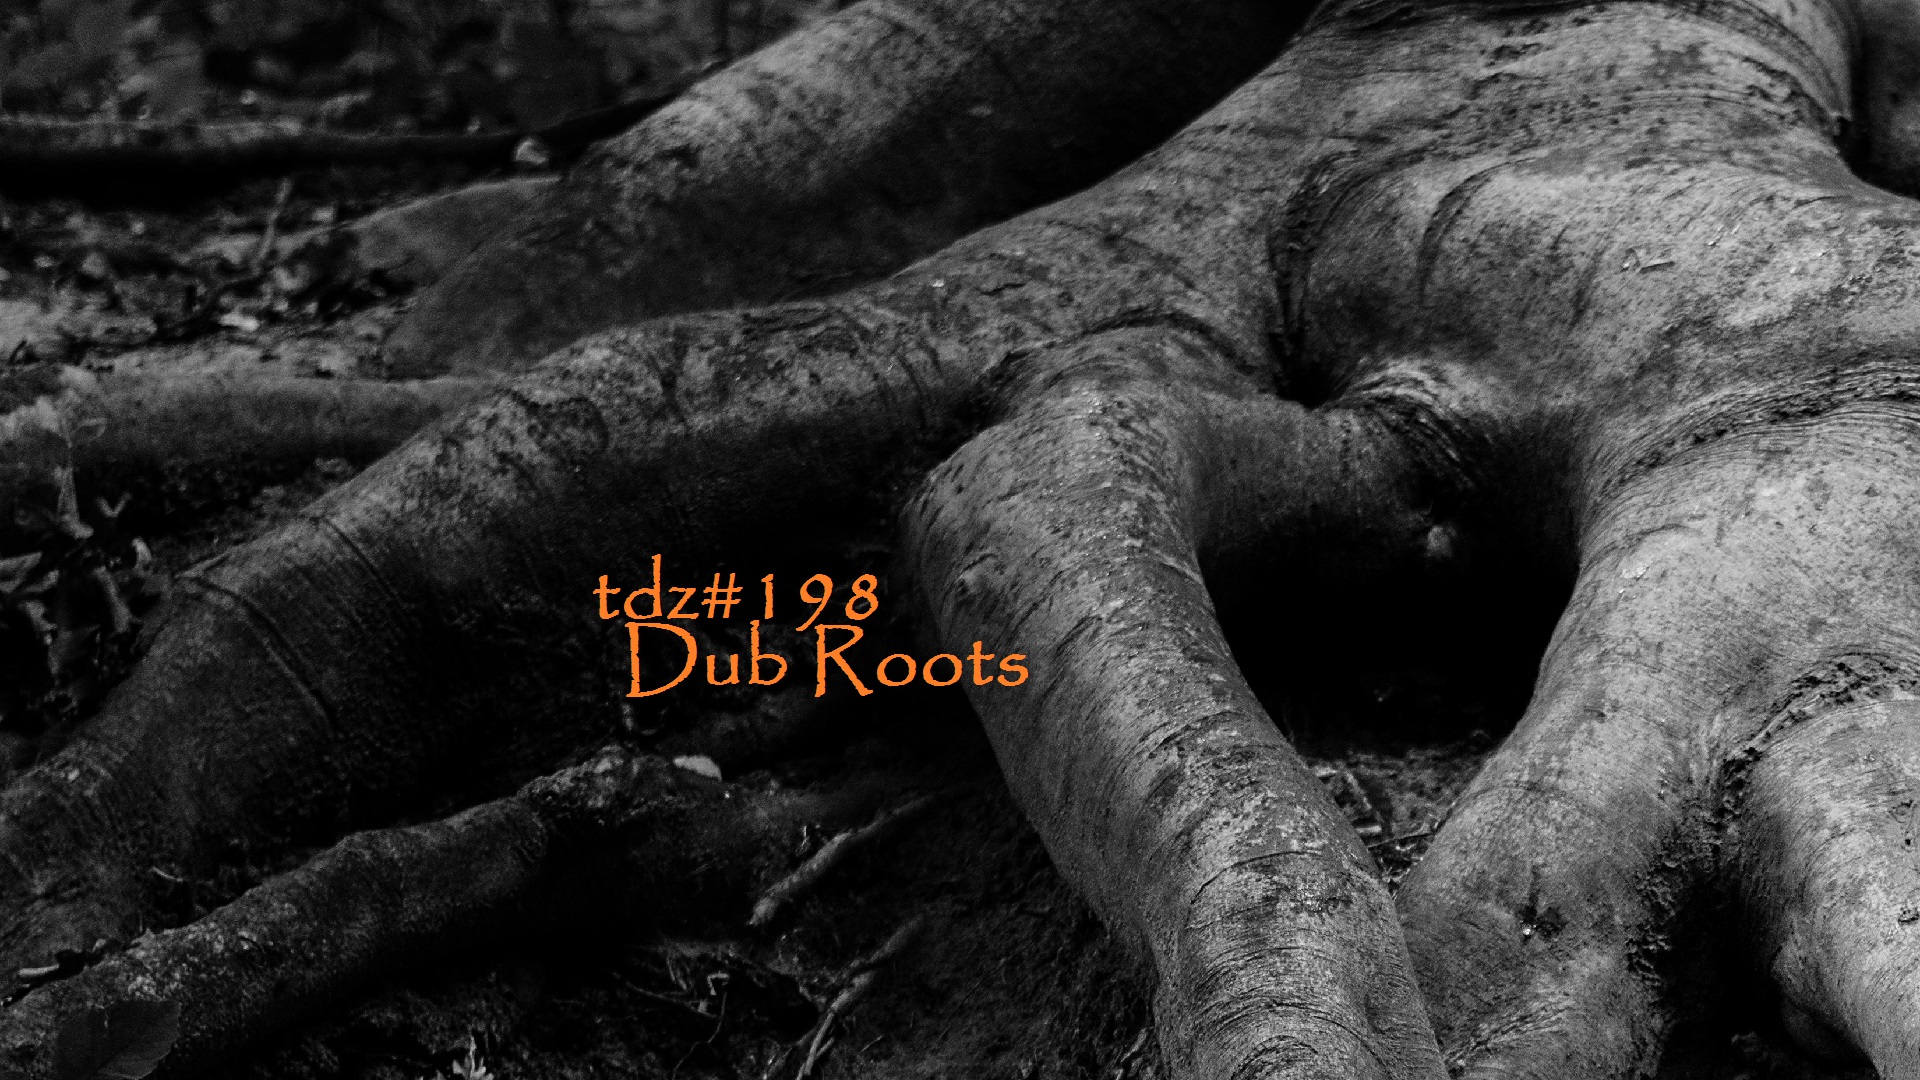 TDZ#198... Dub Roots.....